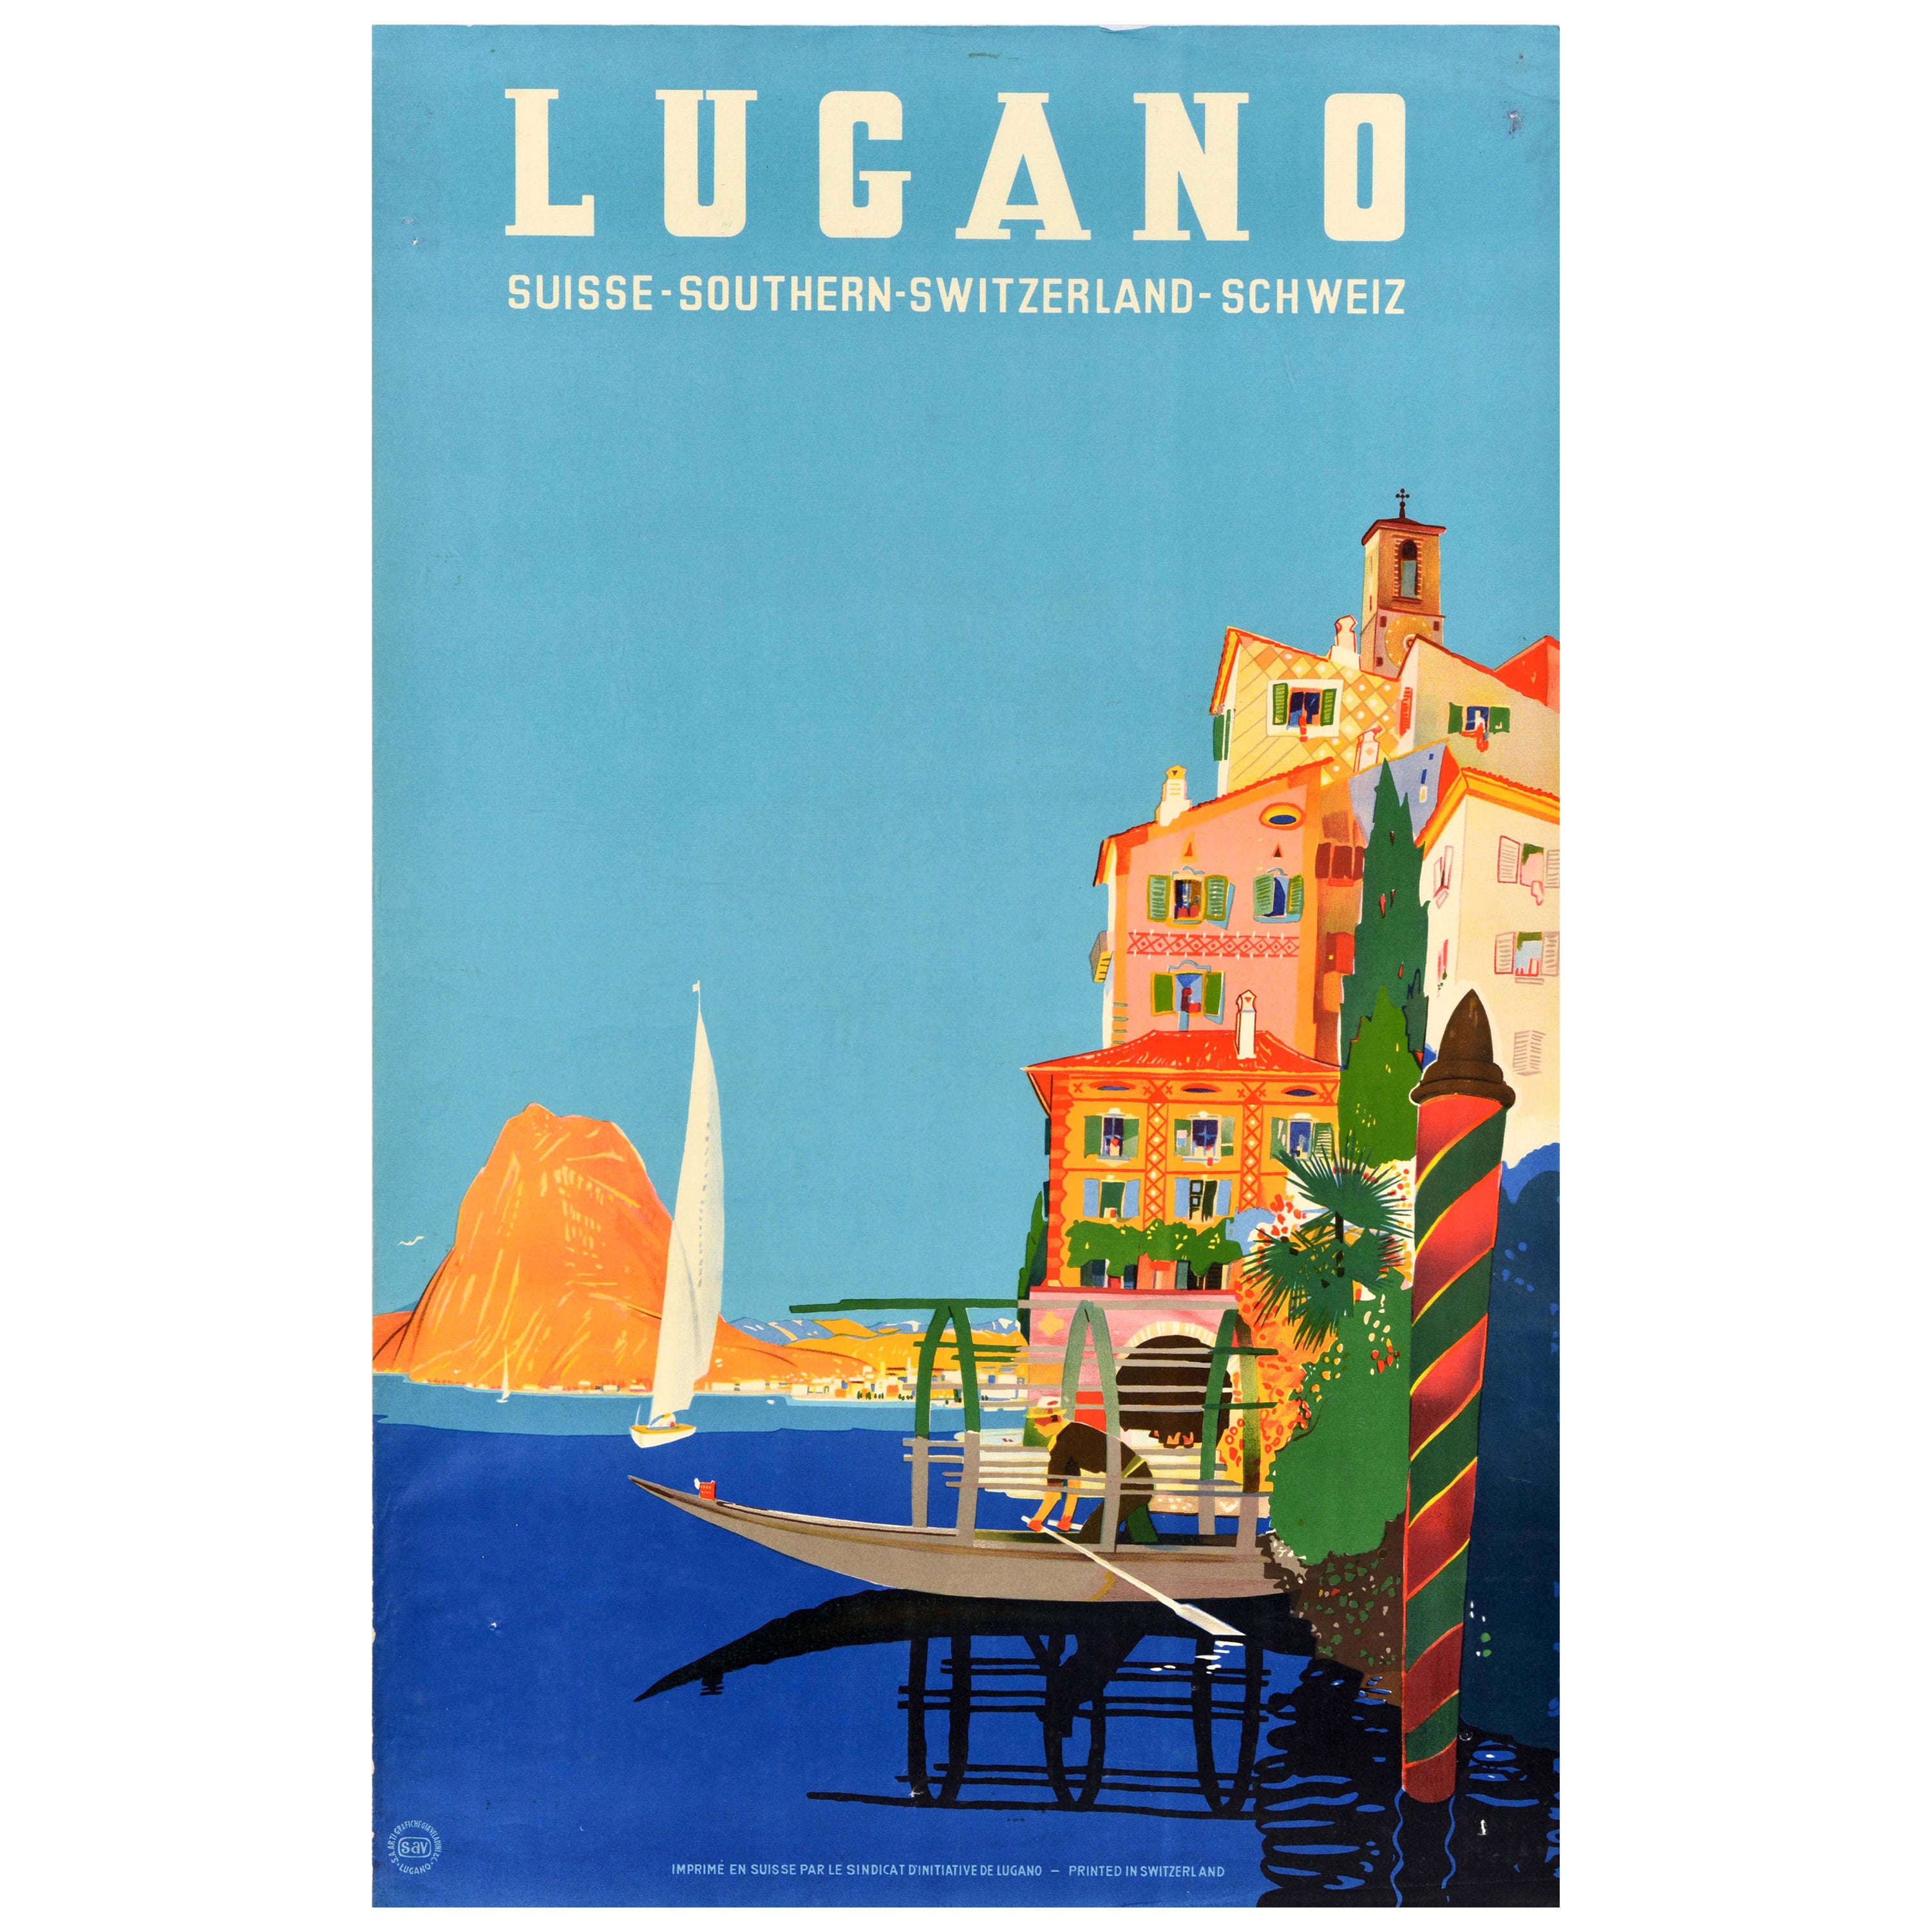 Original Vintage Travel Poster Lugano Southern Switzerland Suisse Schweiz Buzzi For Sale